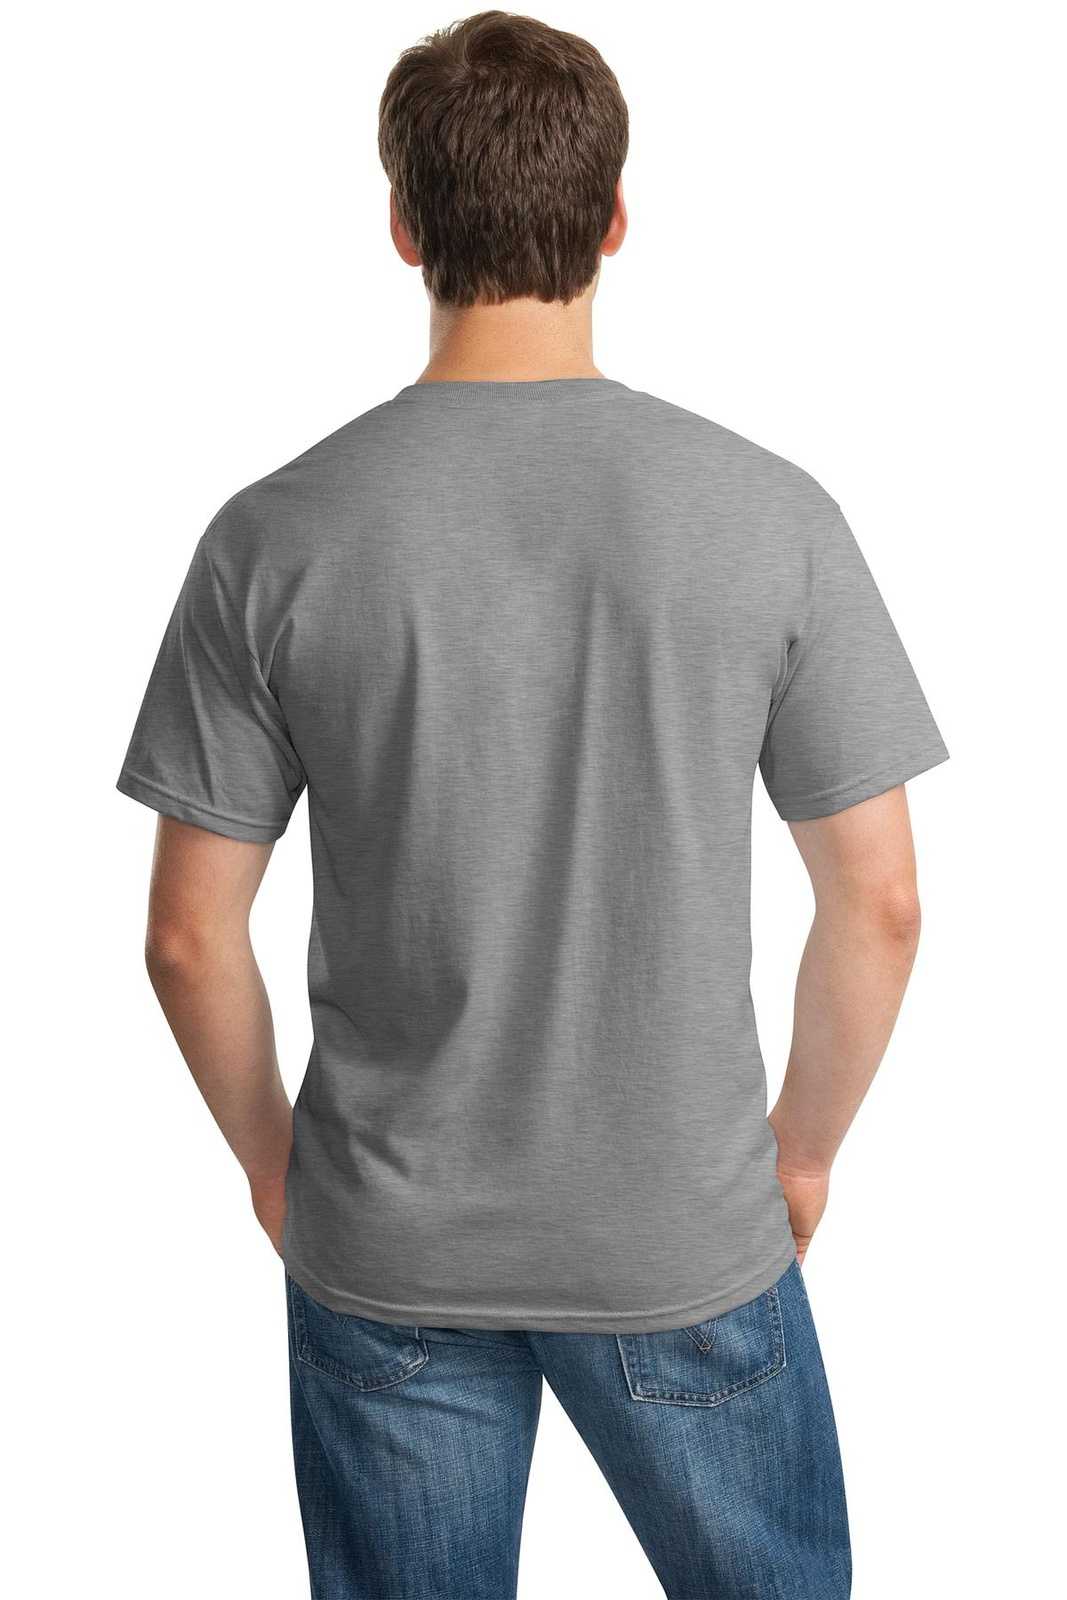 Gildan 5000 Heavy Cotton 100% Cotton T-Shirt - Sport Gray - HIT a Double